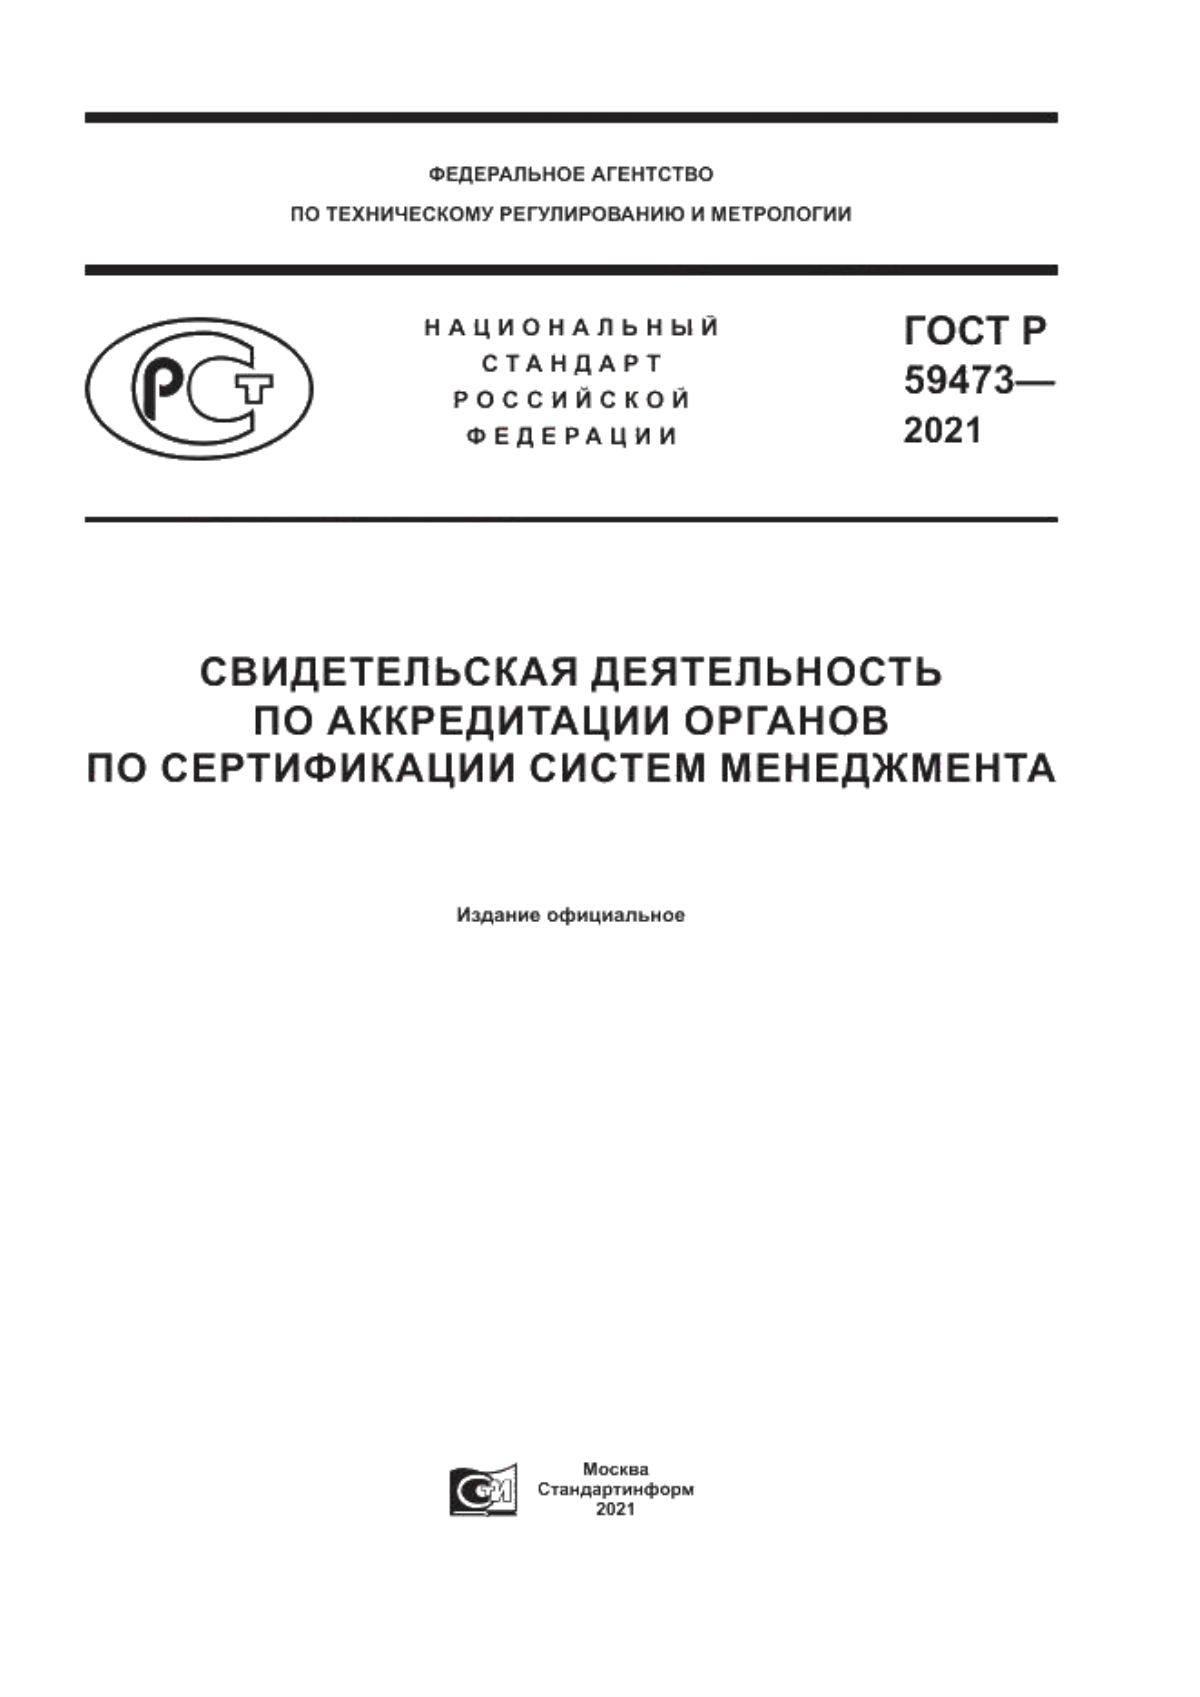 ГОСТ Р 59473-2021 Свидетельская деятельность по аккредитации органов по сертификации систем менеджмента